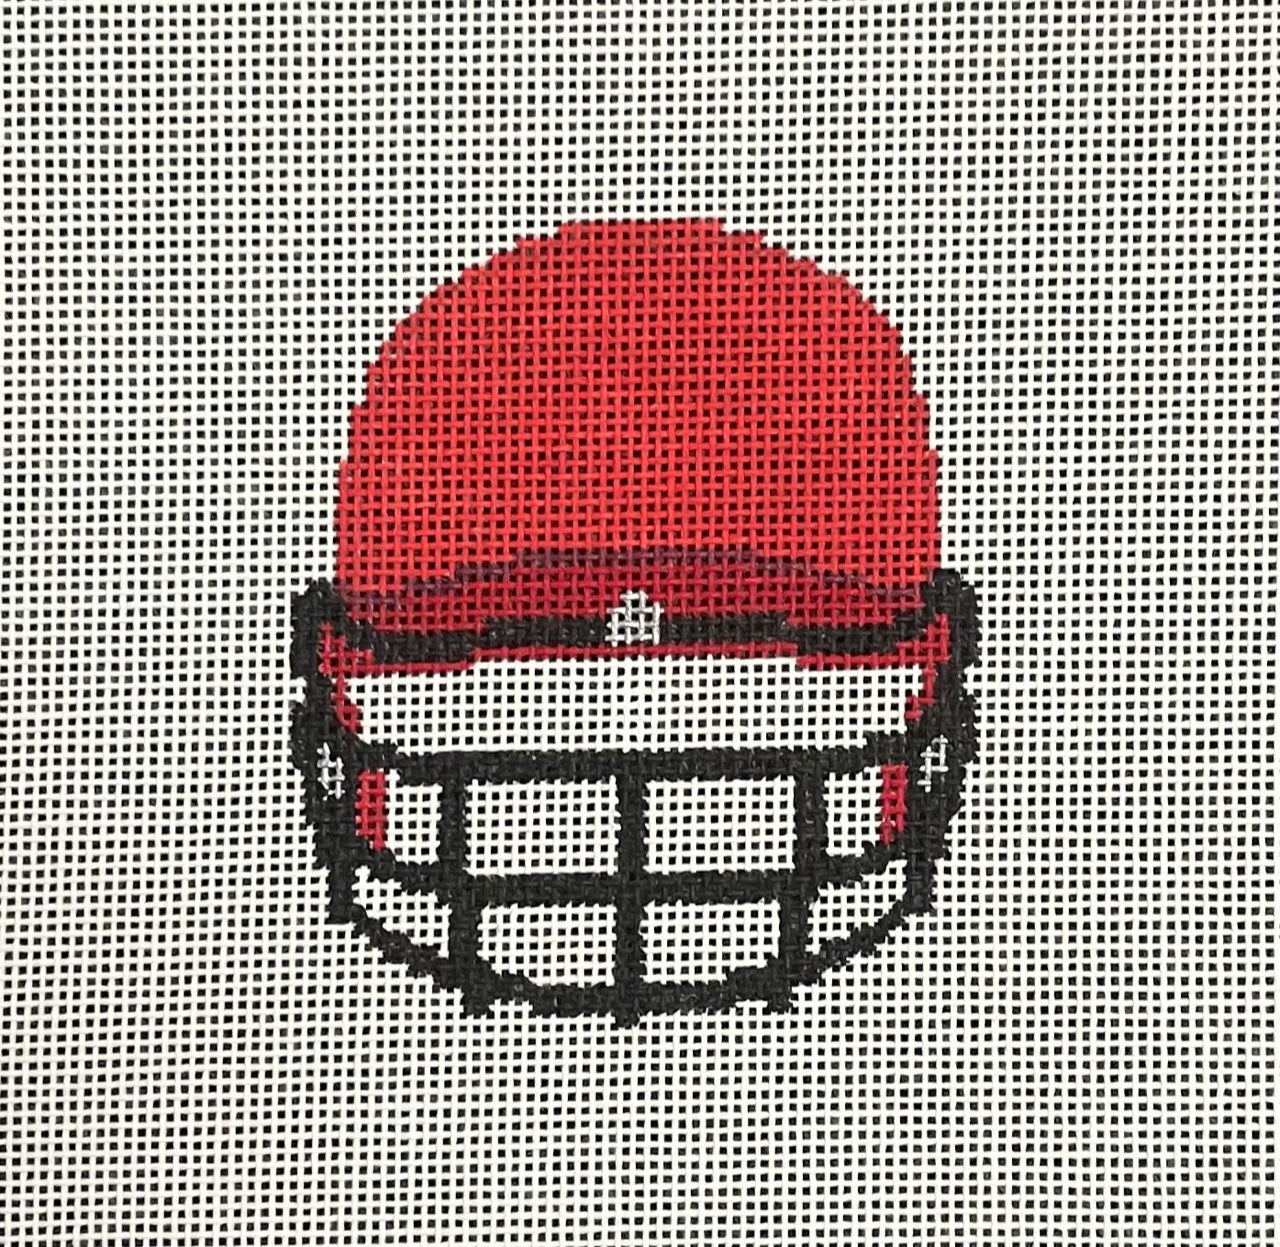 Helmet: Baseball